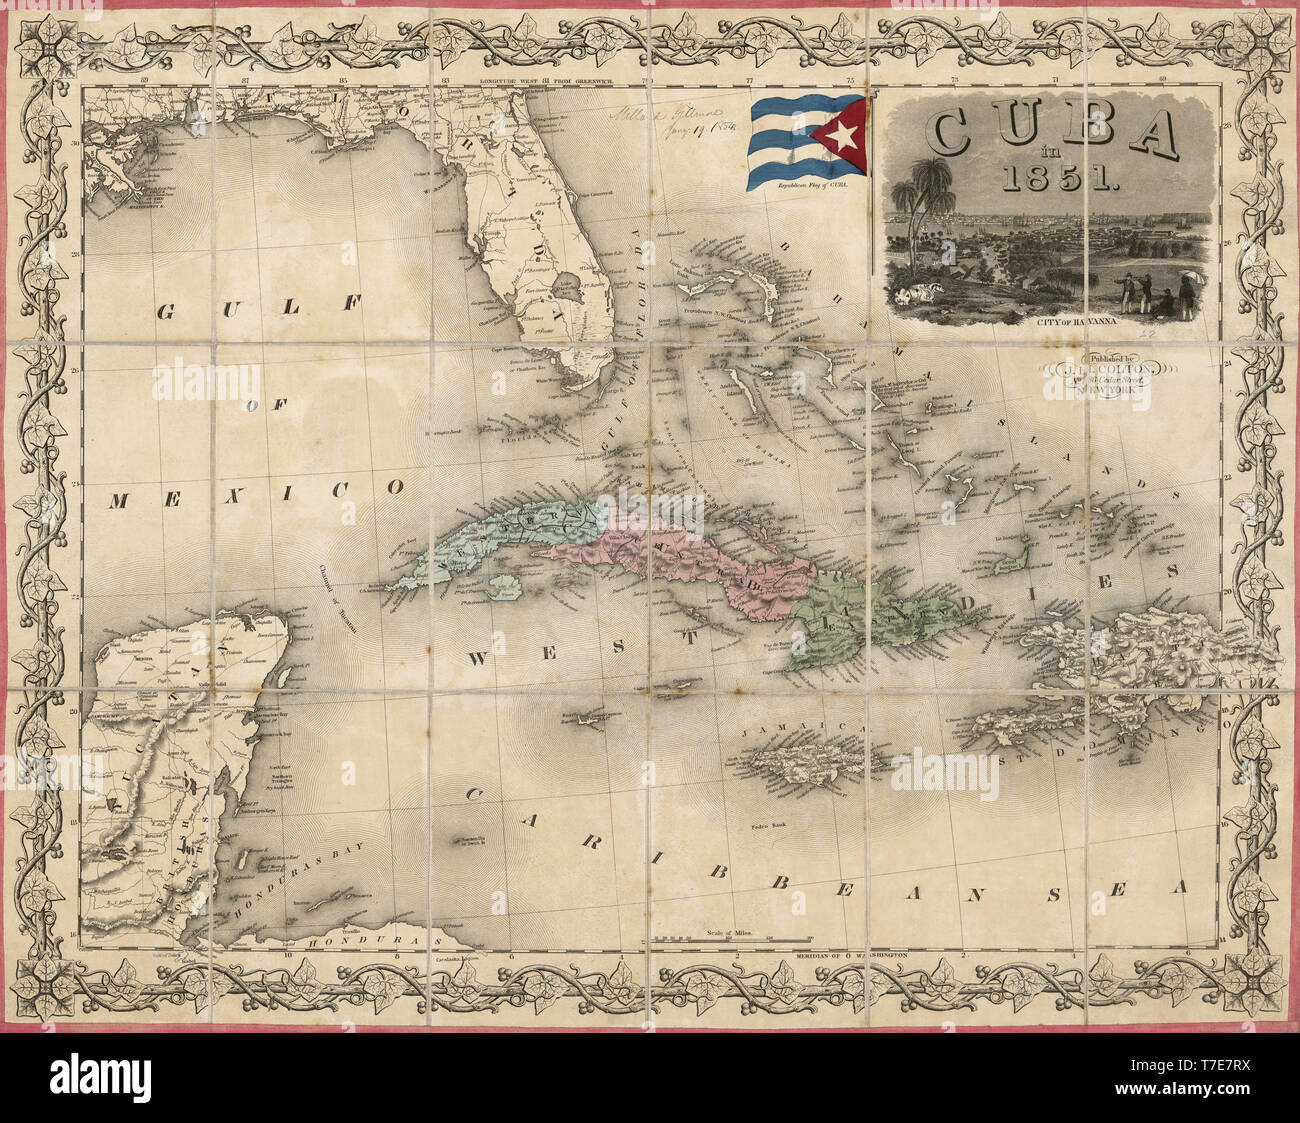 Mappa di Cuba, pubblicato da J.H. Colton & Co., New York, 1851 Foto Stock